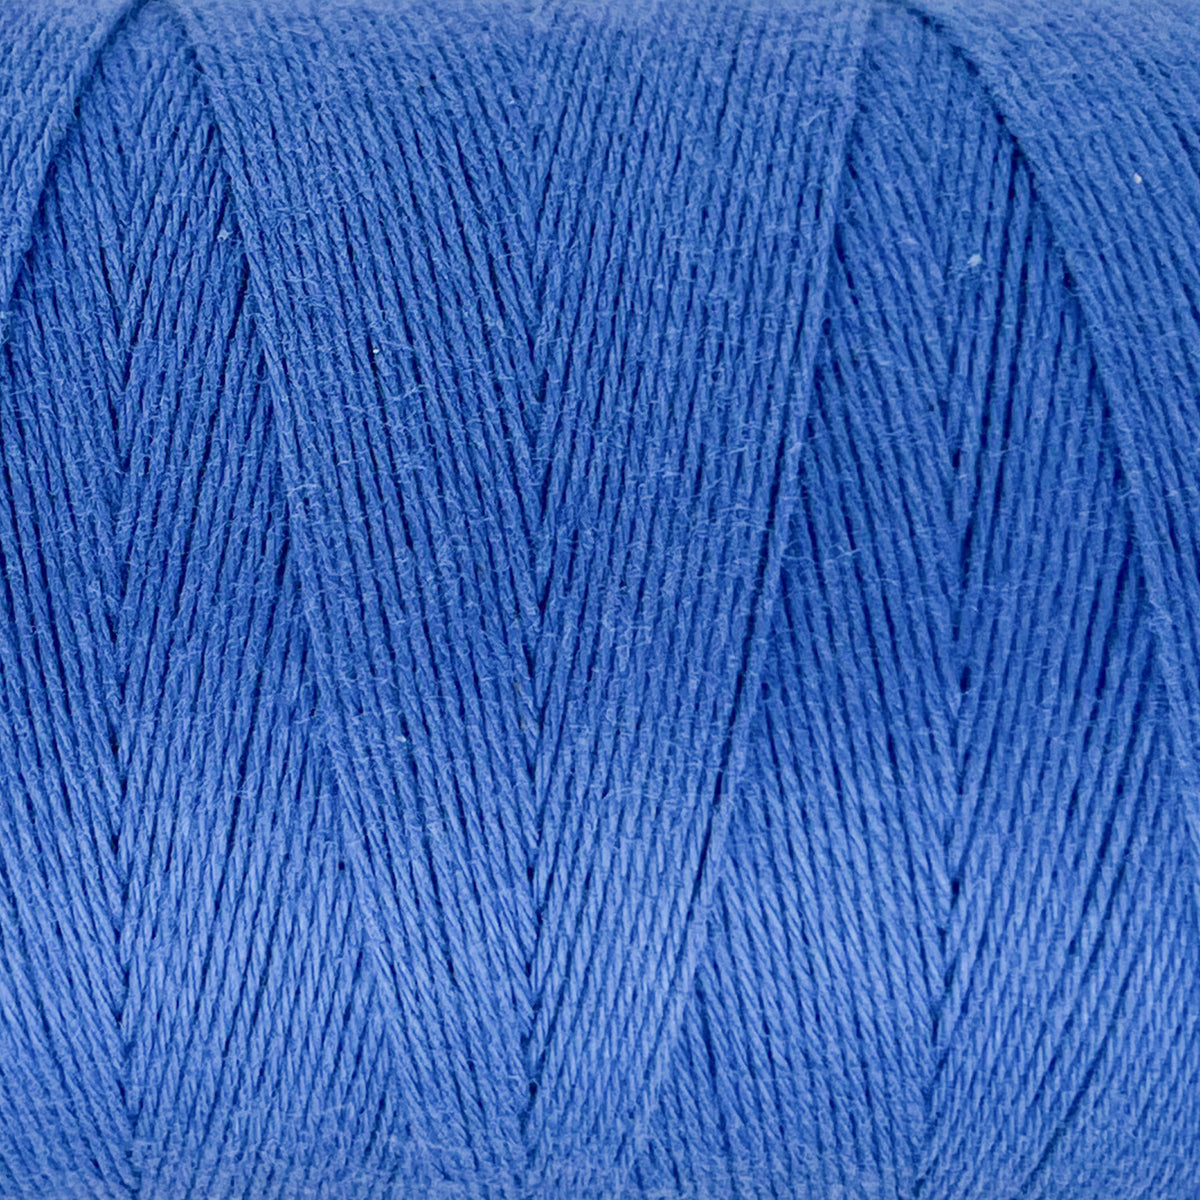 8/4 Cotton Warp Yarn - Natural and Colors